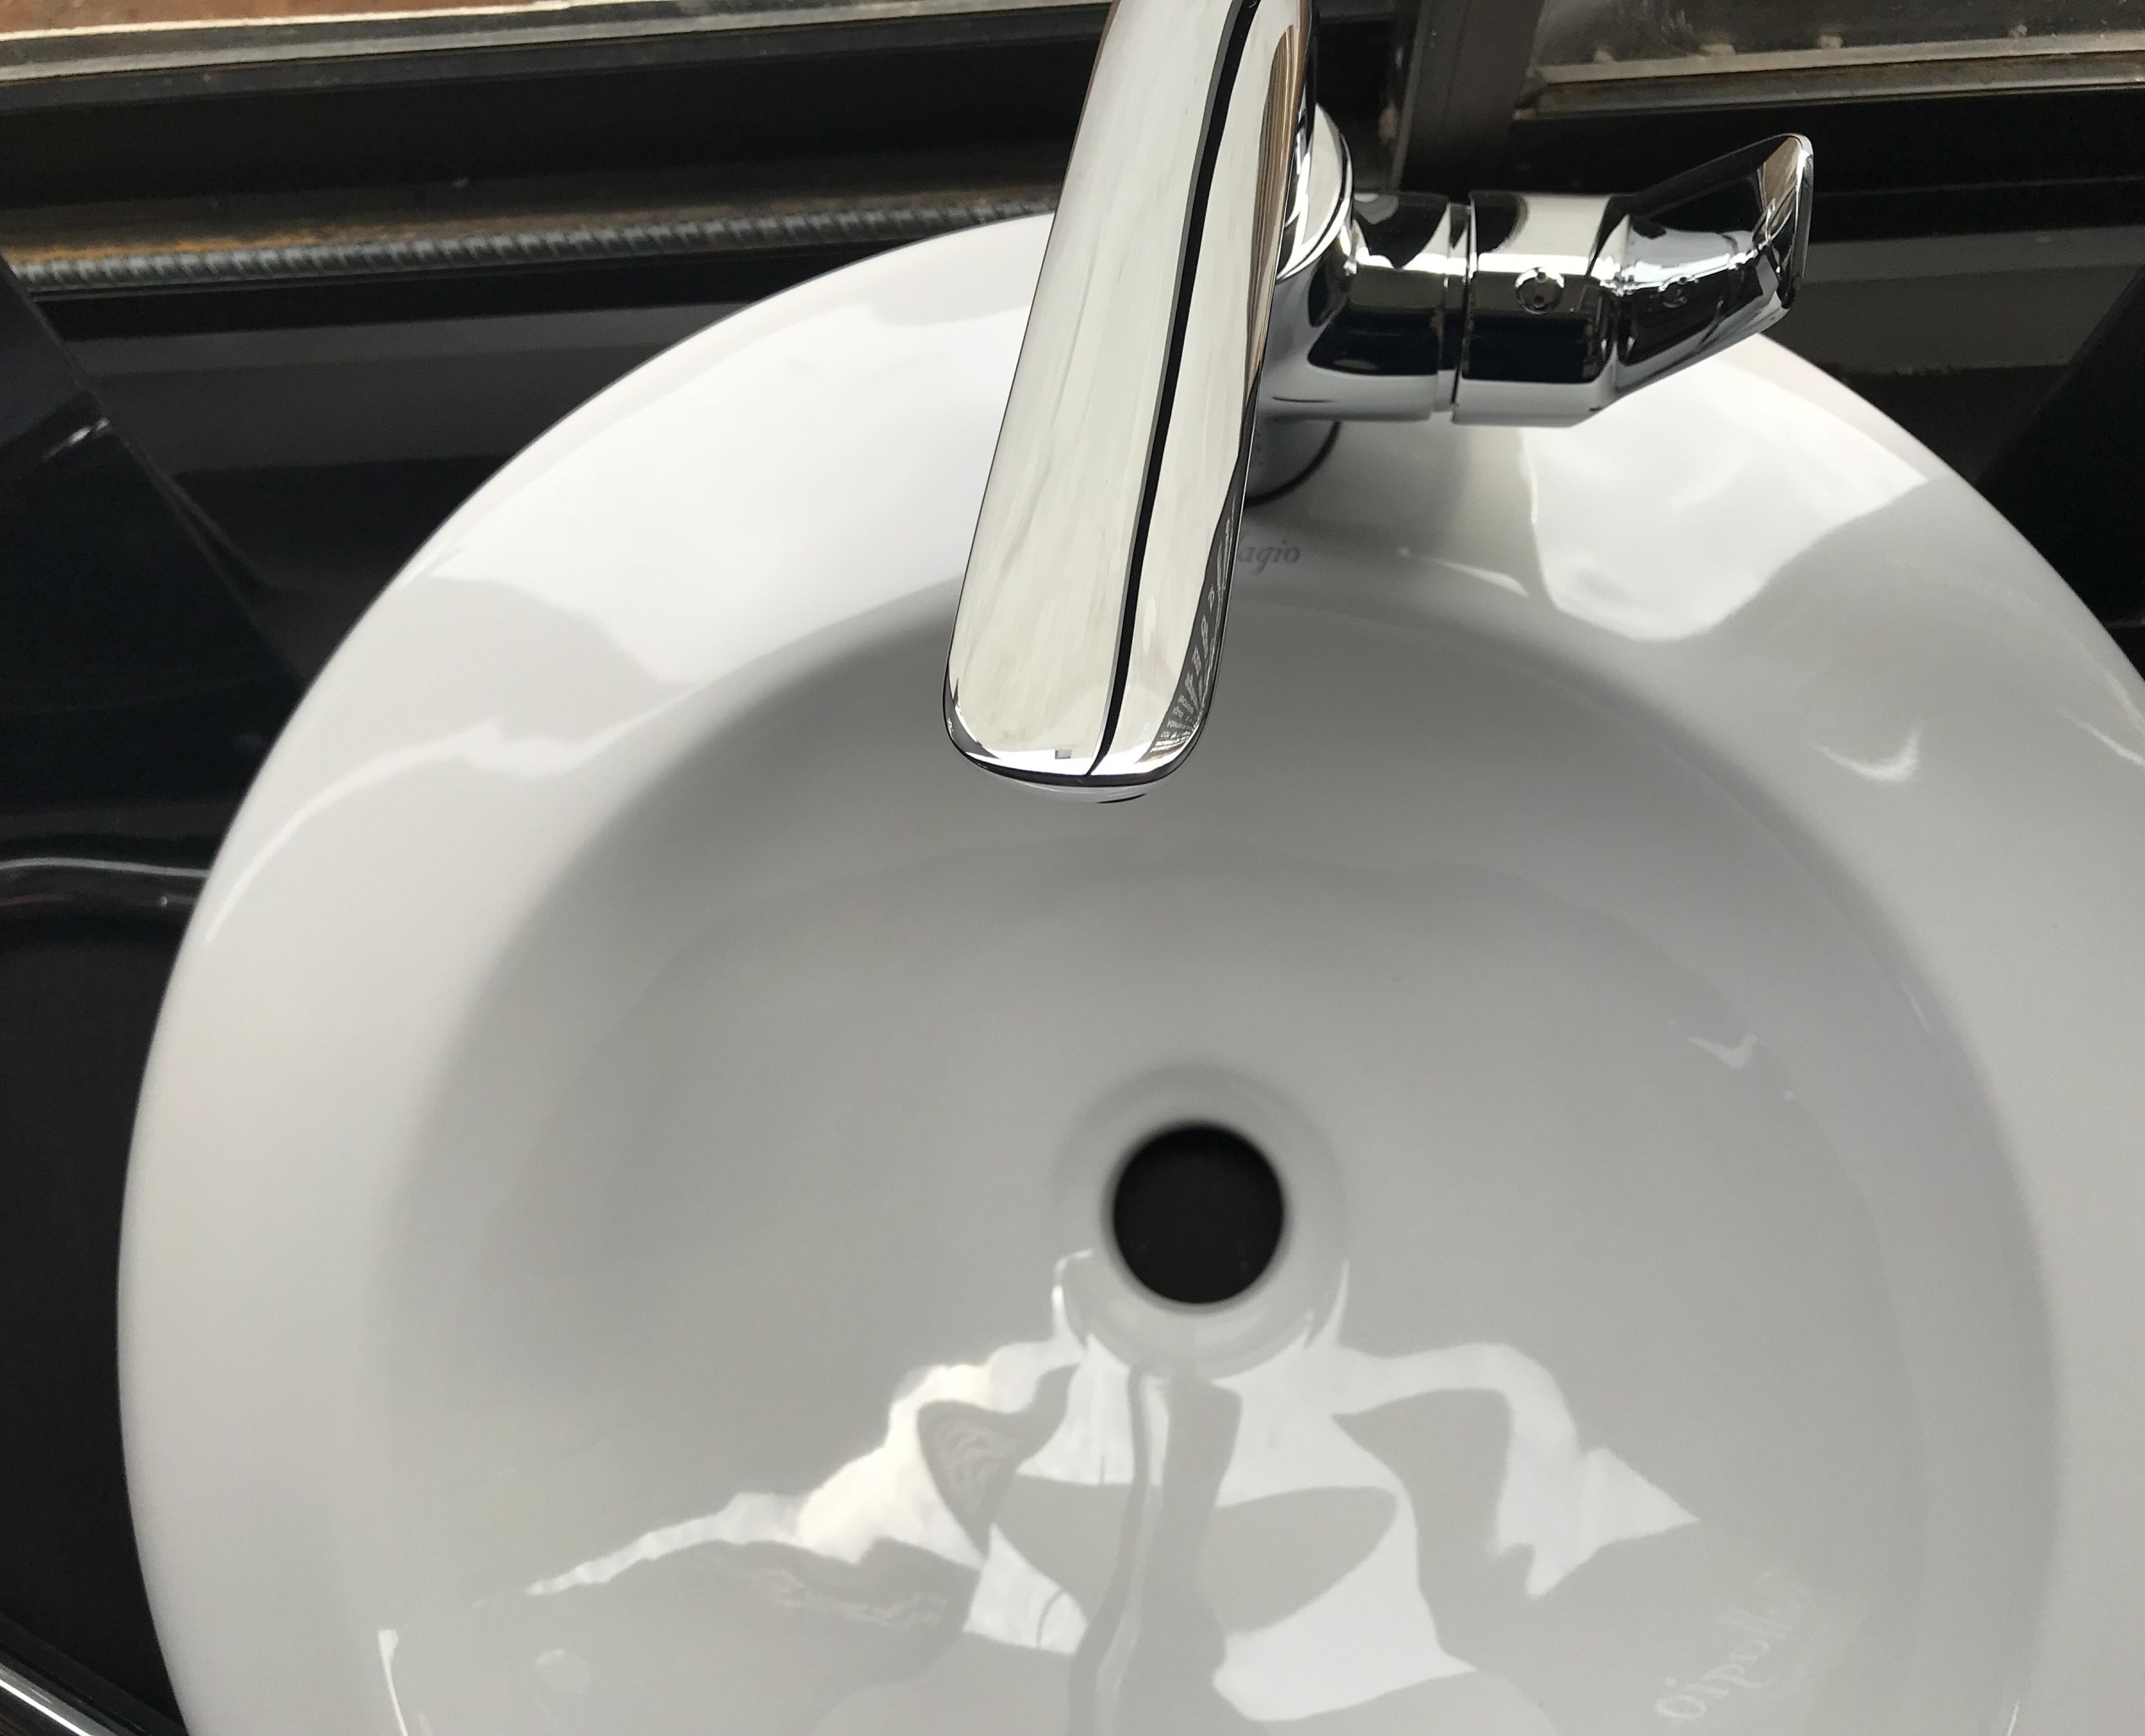 unblock bathroom sink waste pipe